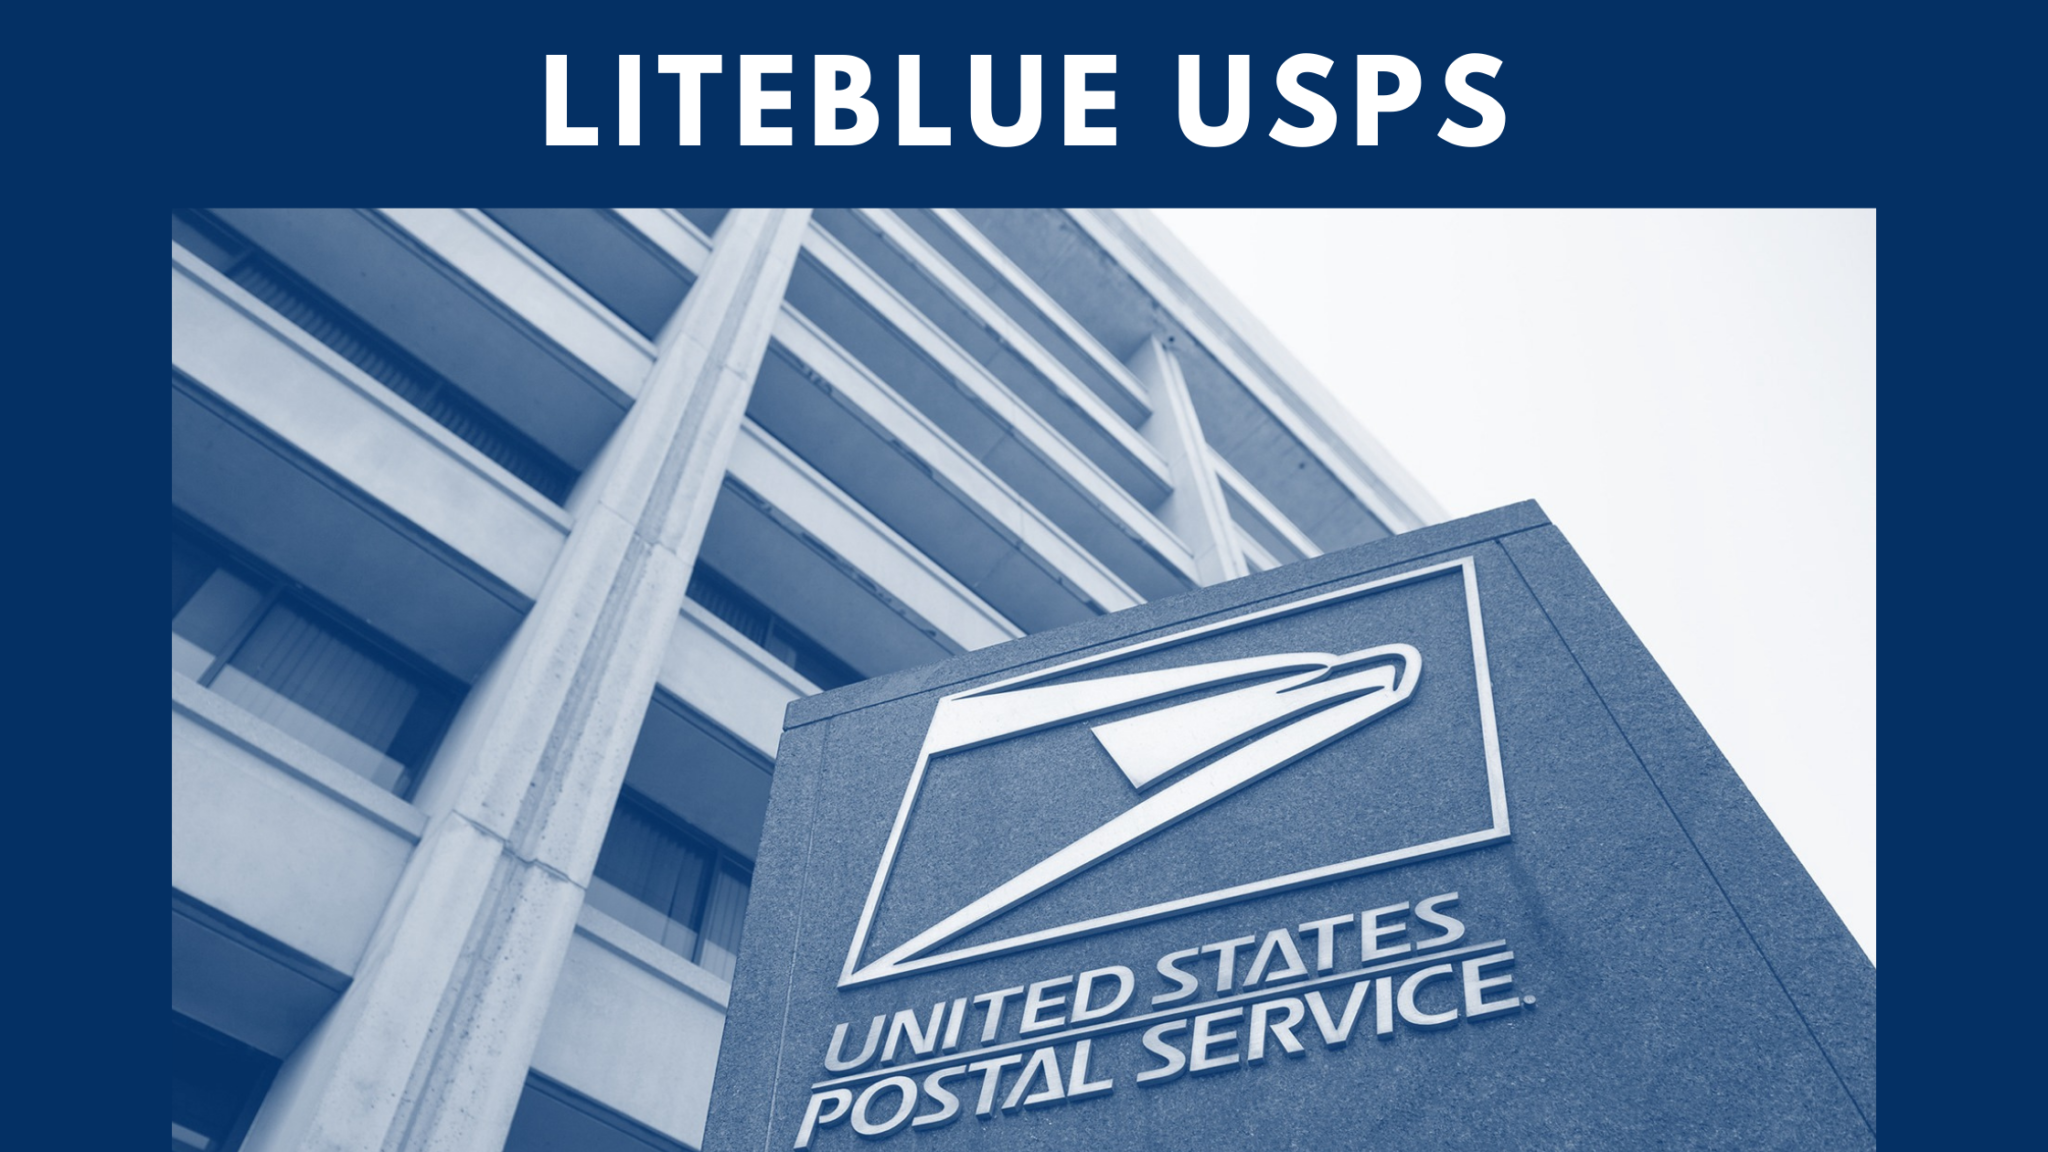 liteblue-usps-lite-blue-login-at-liteblue-usps-gov